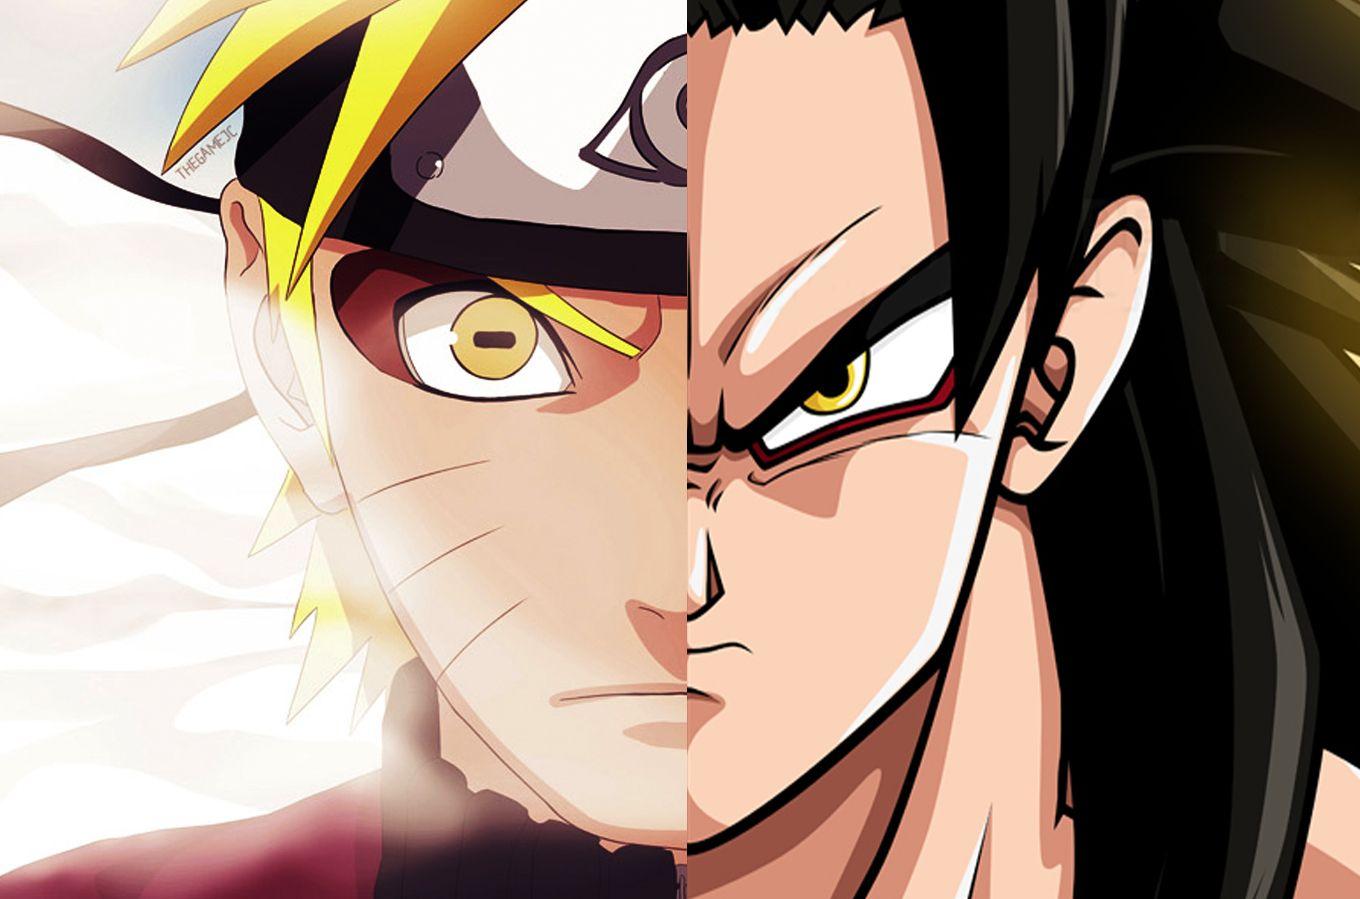 Naruto and Goku. Super Saiyan 4 and Sage mode. Eerie similarities